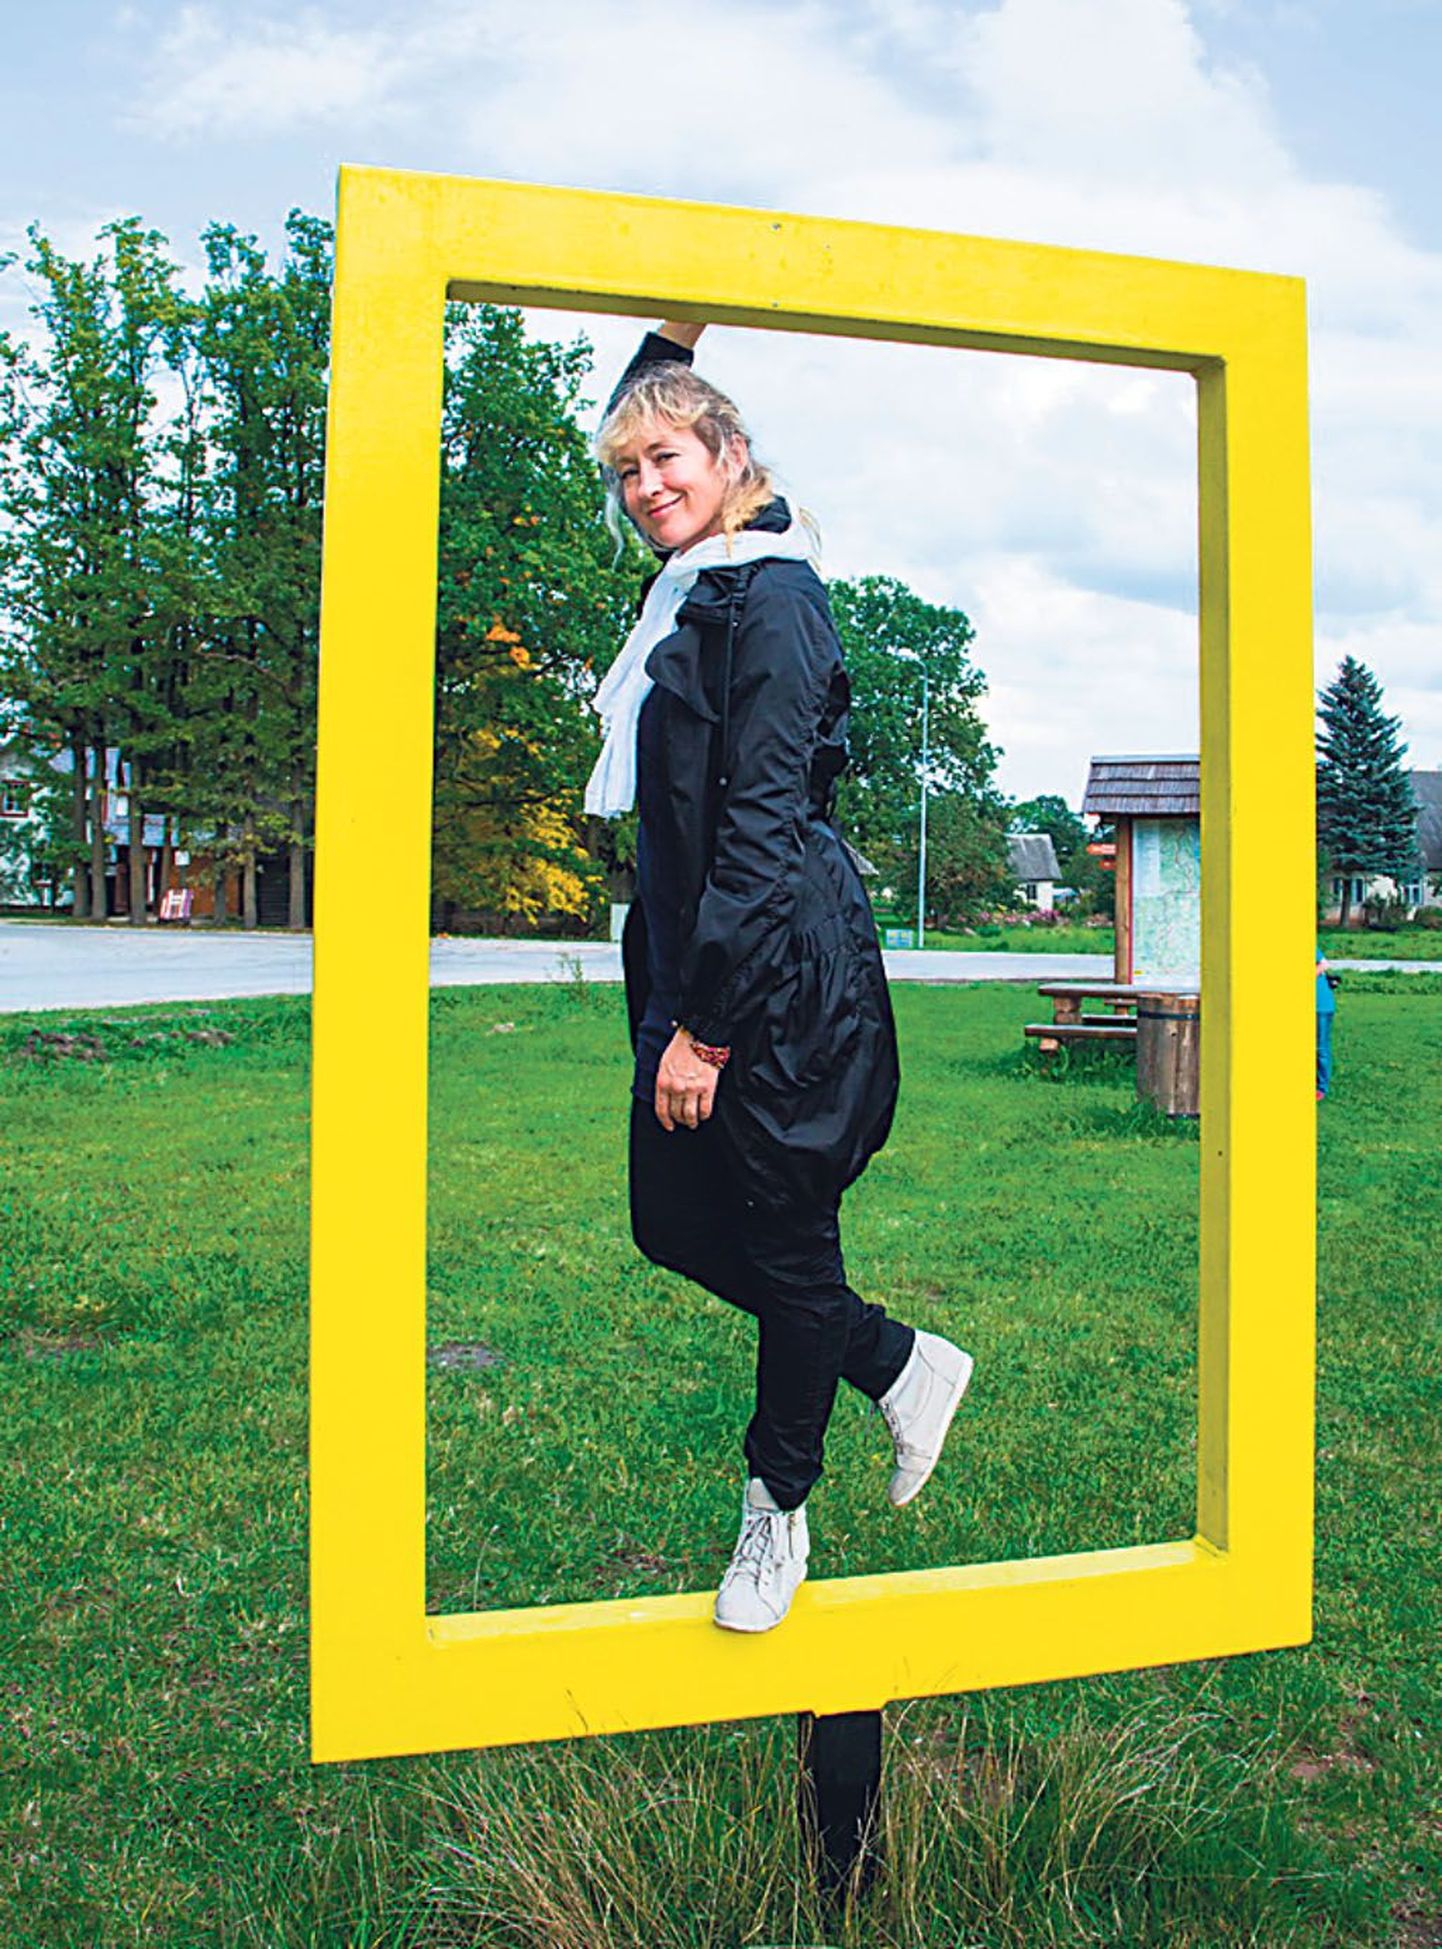 Järgneval viiel aastal kõnetab Lõuna-Eesti külastajaid National Geographicu kaubamärk: 21 kollast akent viitavad mõnele turismimagnetile ja annavad teada, et olete Euroopa liidu piirialal.